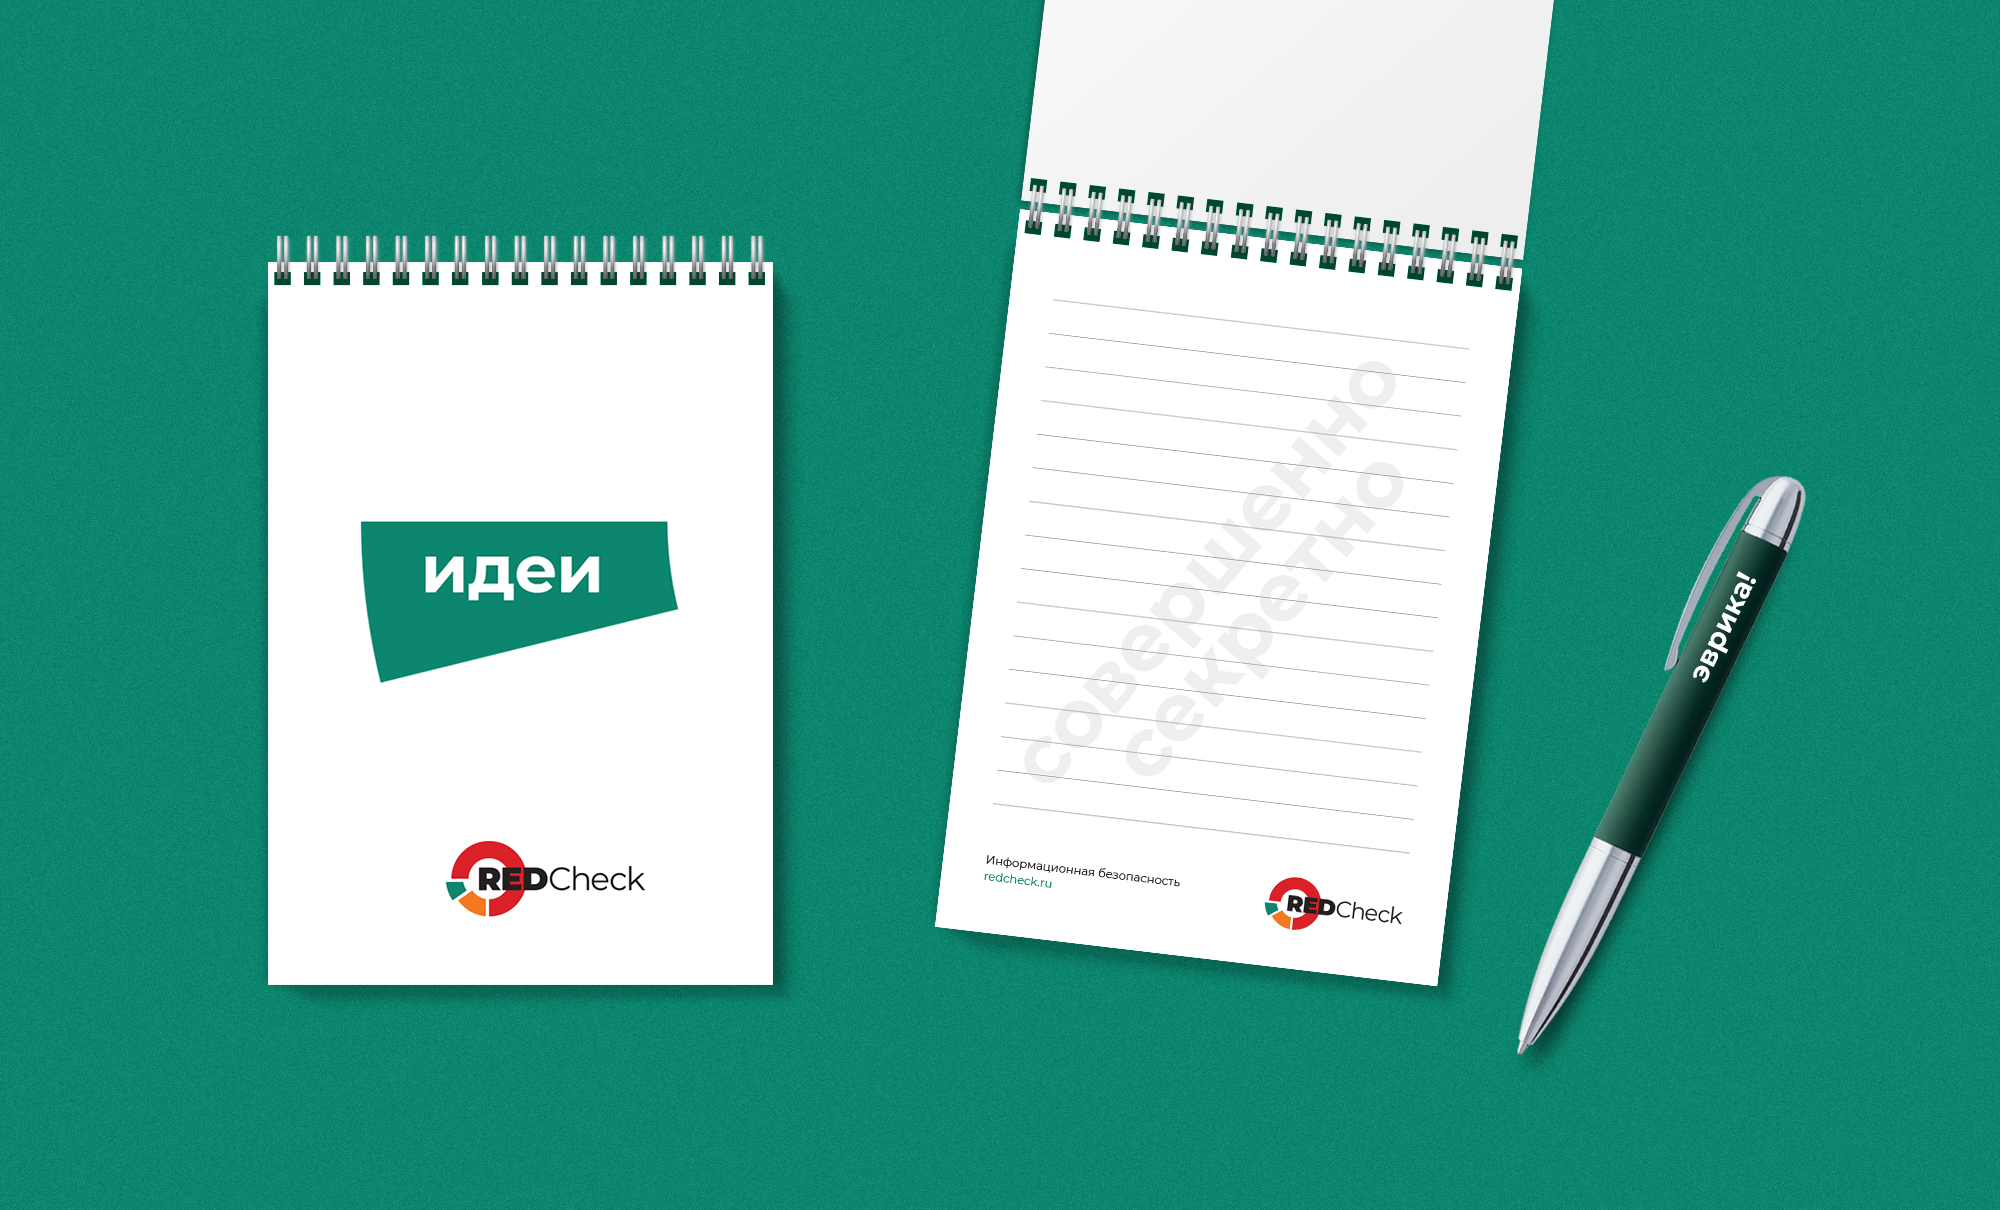 Логотип и фирменный стиль Российского сканера информационной безопасности RedCheck компании АЛТЭКС-СОФТ. Брендинговое агентство WeDESIGN | МыДИЗАЙН, агентство мыдизайн, wedesign, креативное агентство, дизайн студия, мы, https://мыдизайн.рф, https://wedesign.top, https://wedesigngroup.ru, info@wedesigngroup.ru, +7 (812) 924-59-96